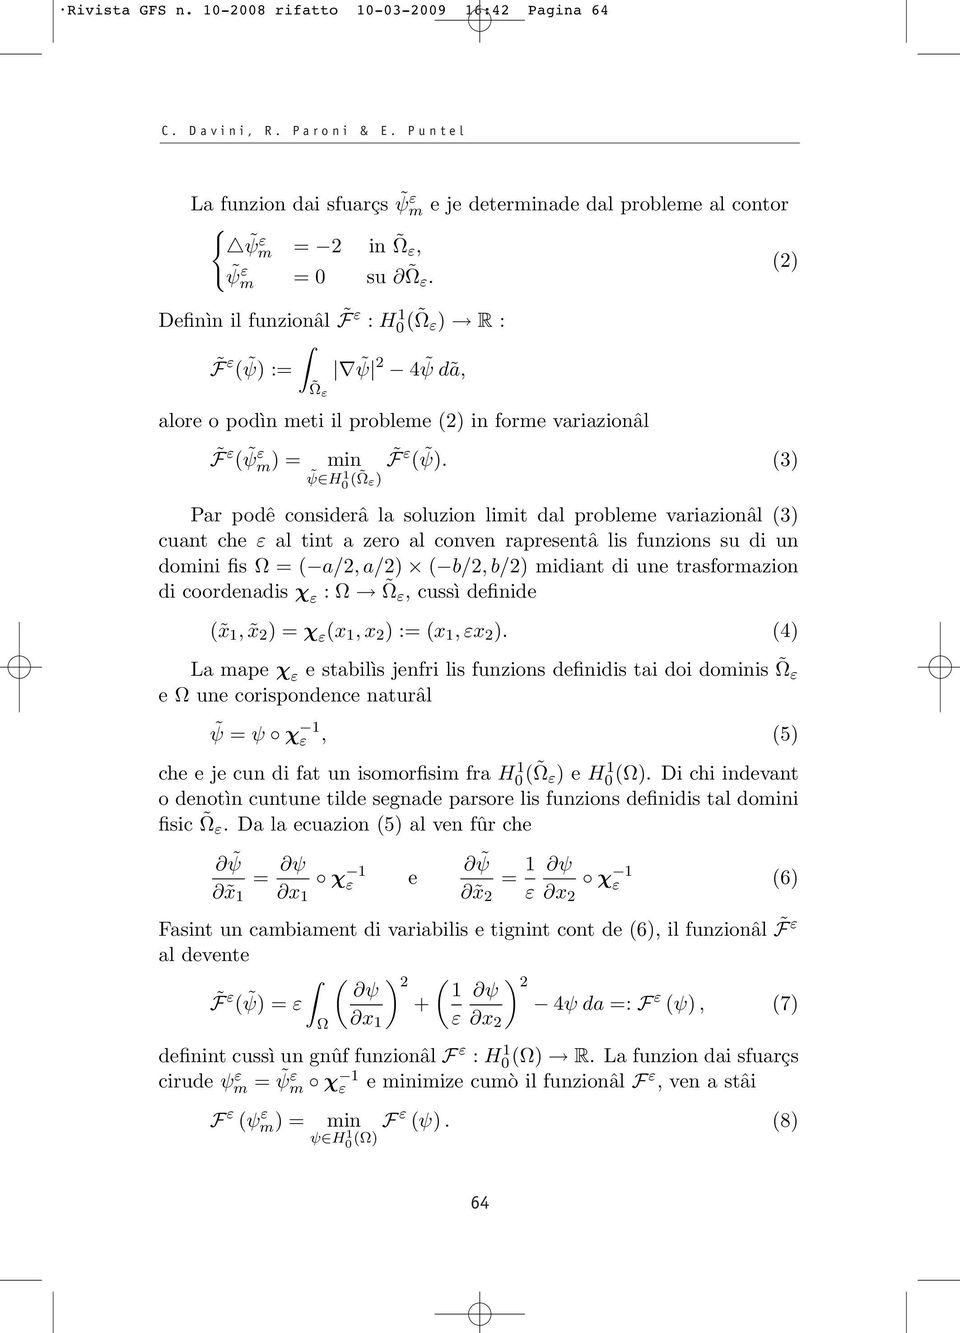 (3) ψ H 0 1( ) Par podê considerâ la soluzion limit dal probleme variazionâl (3) cuant che al tint a zero al conven rapresentâ lis funzions su di un domini fis = ( a/2,a/2) ( b/2,b/2) midiant di une